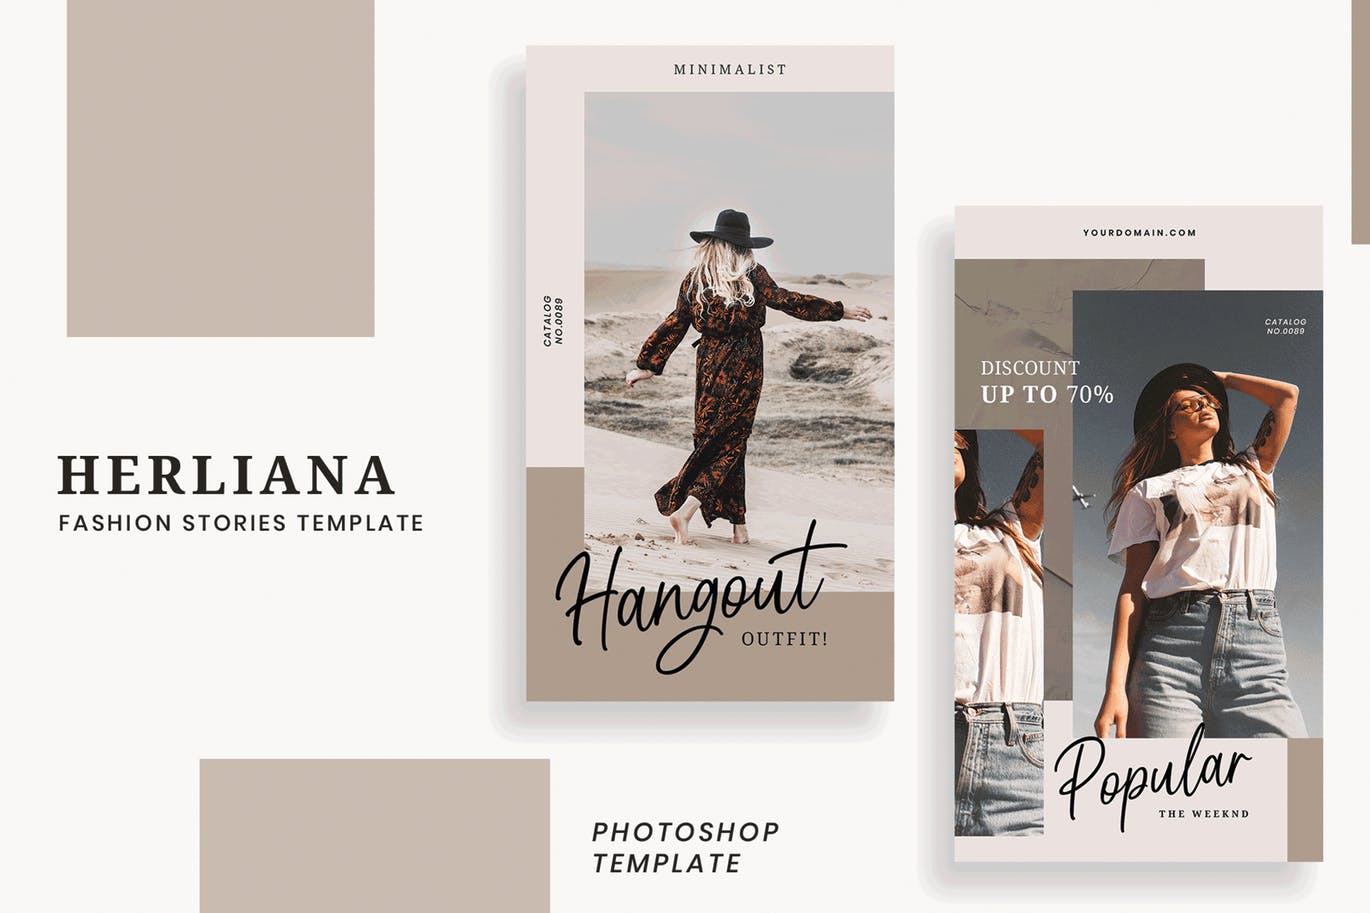 简约风格Instagram社交媒体设计广告图设计模板素材库精选 Herliana Instagram Story Template插图